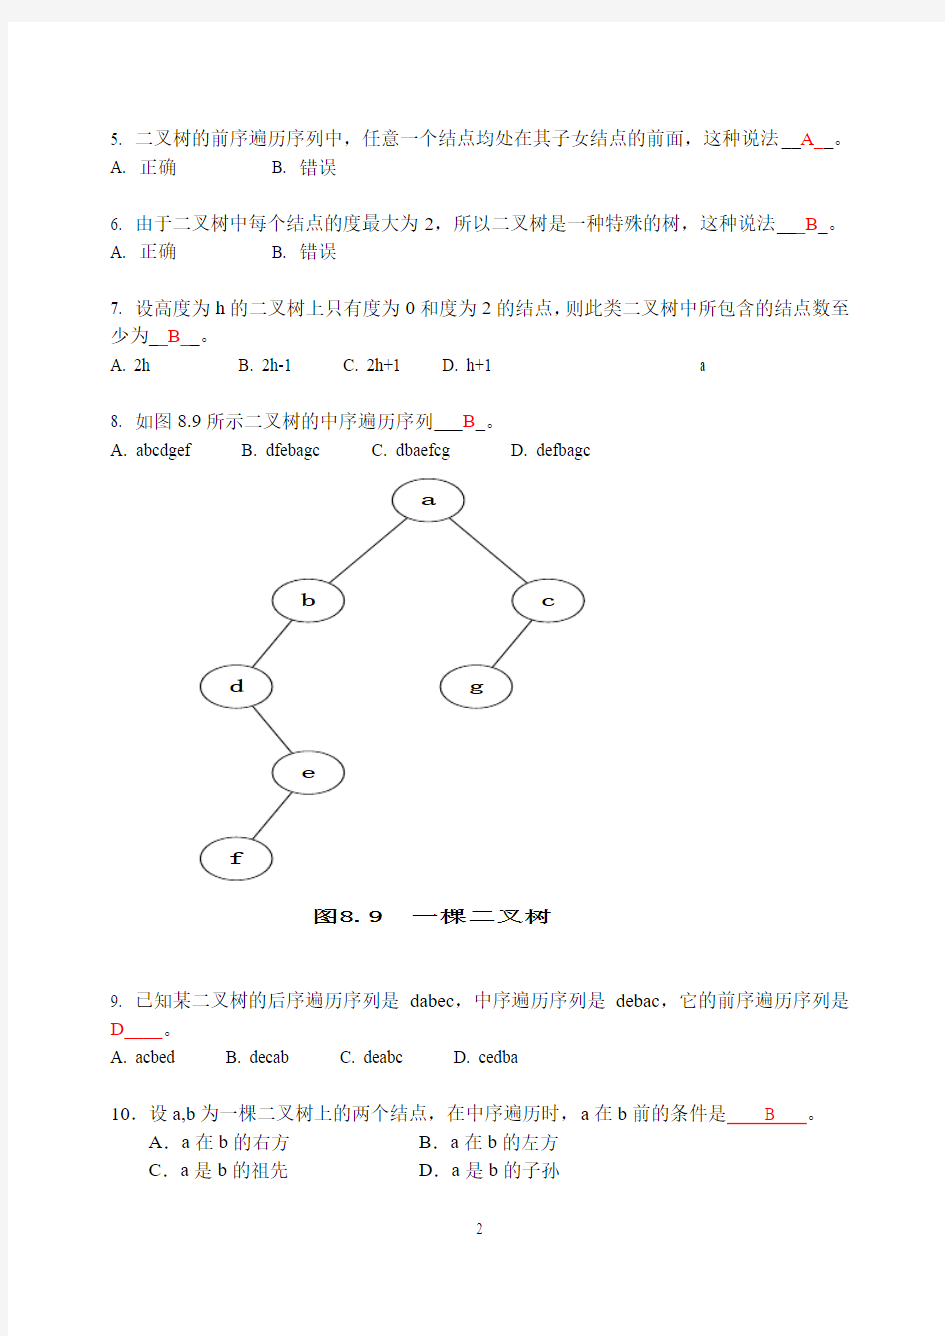 数据结构书面作业练习题6-9